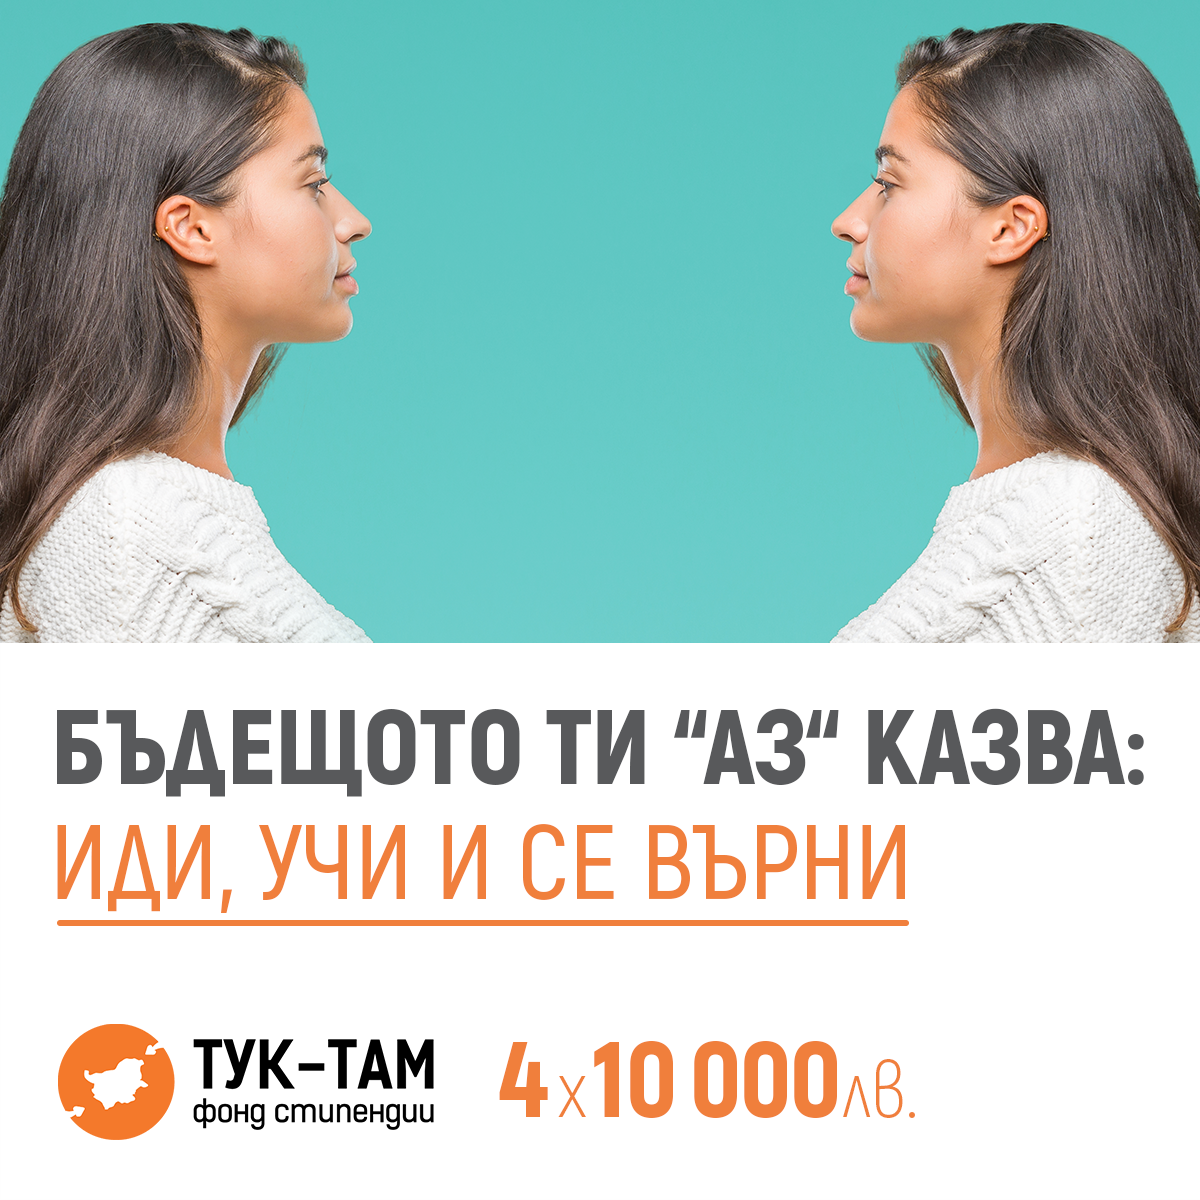 Фондация "Тук-Там" предлага стипендии от 10 000лв за магистратура в чужбина!